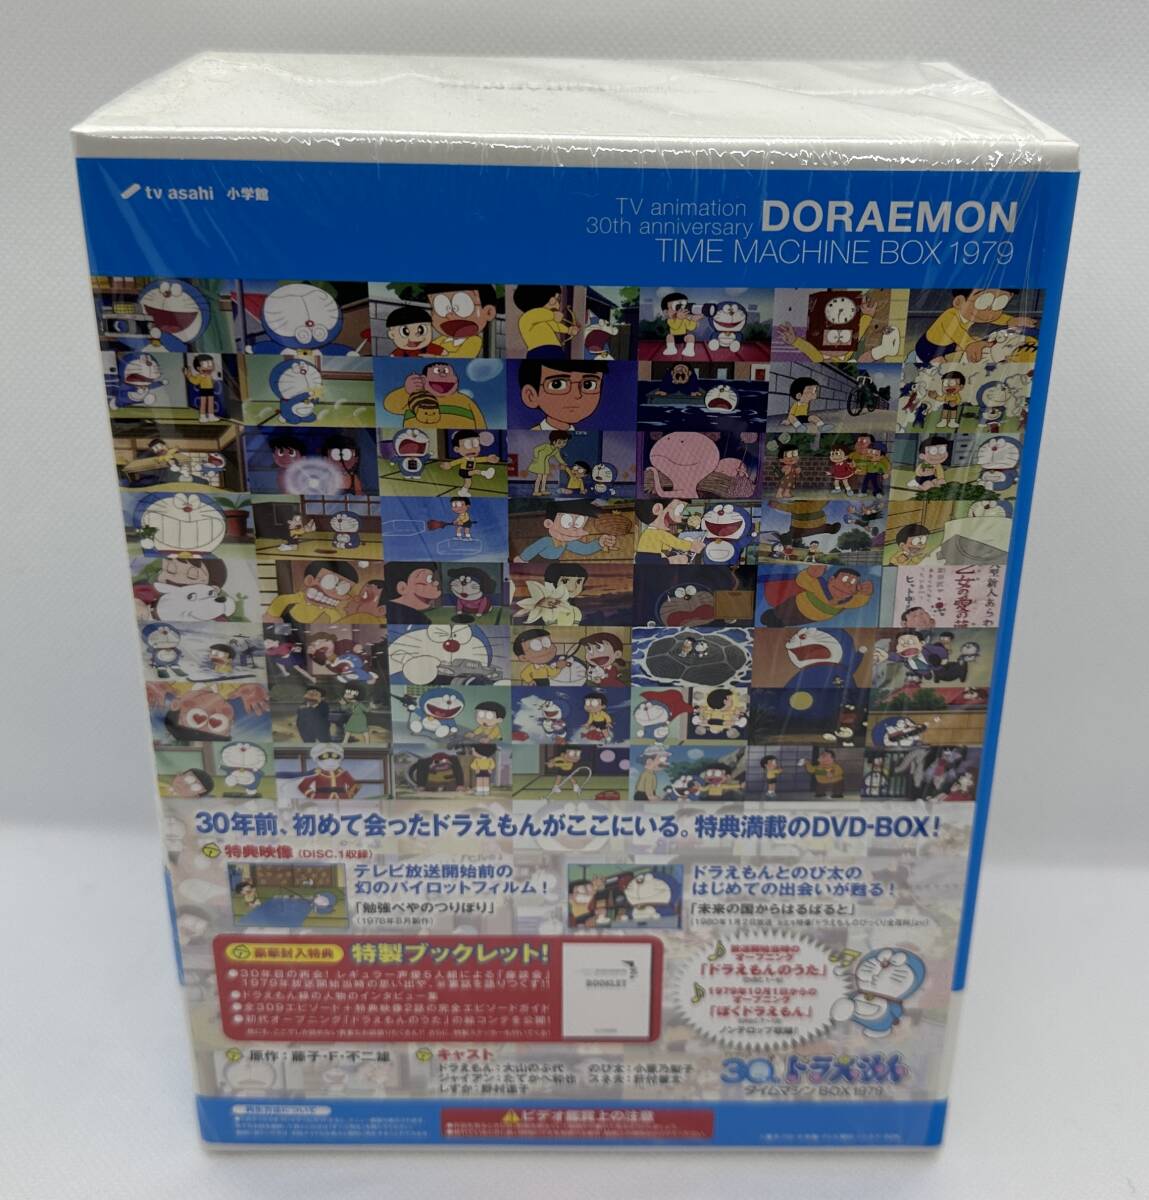 ドラえもん DVD-BOX タイムマシンBOX 1979 初回限定生産 藤子・F・不二雄原作_画像4